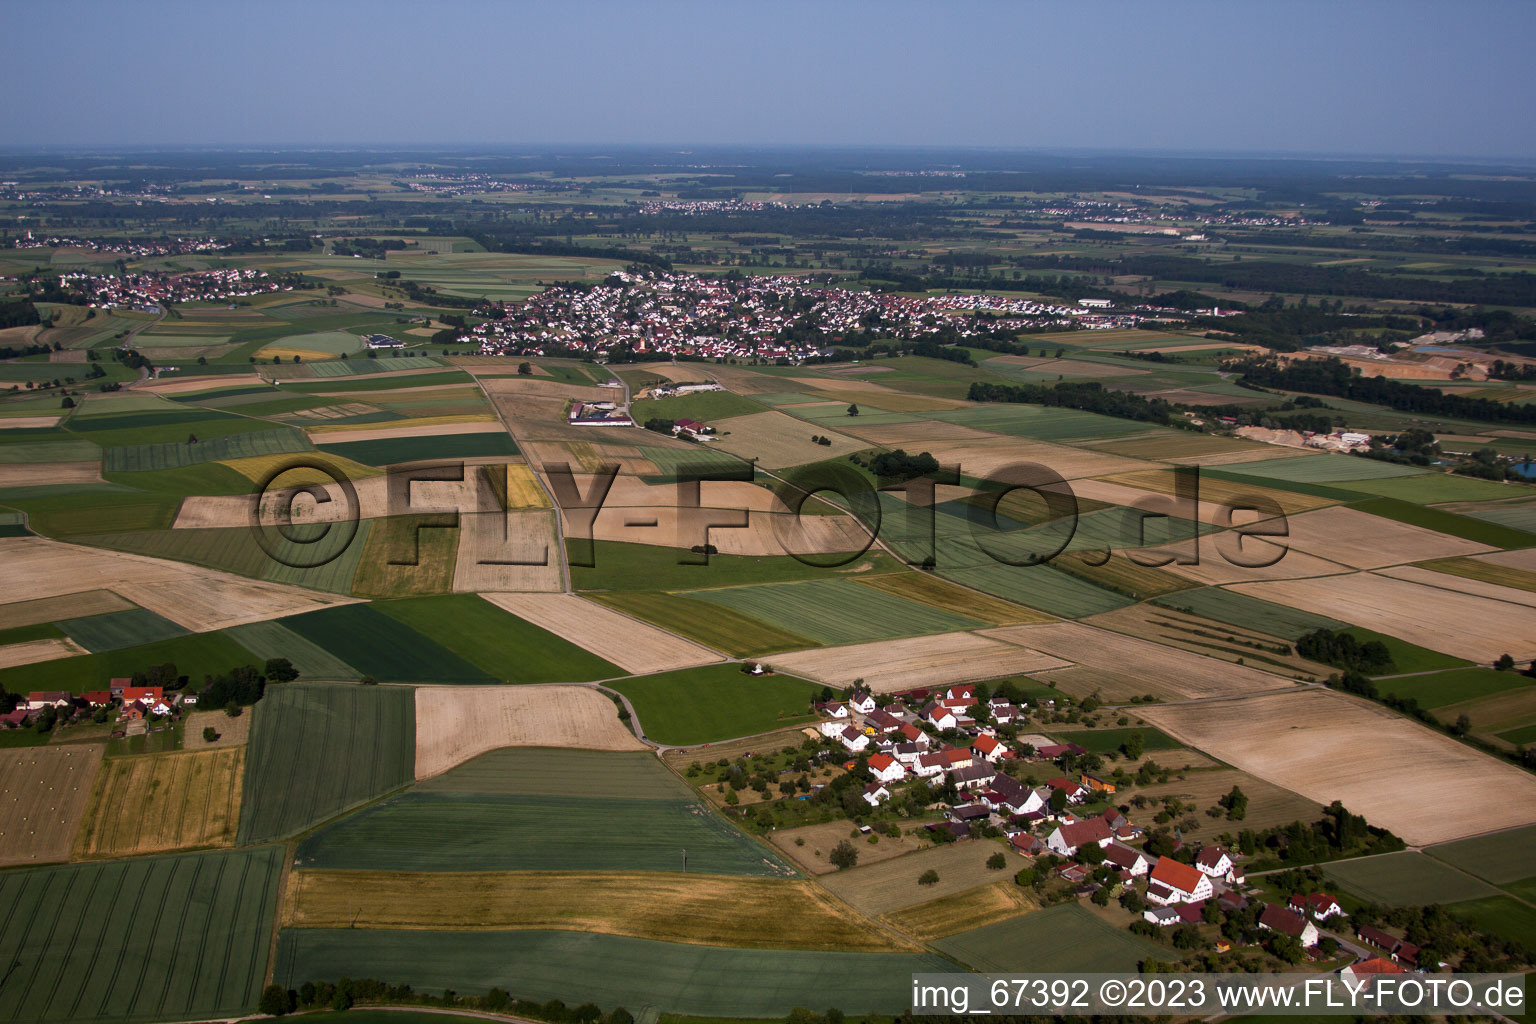 Vue aérienne de Schemmerhofen dans le département Bade-Wurtemberg, Allemagne